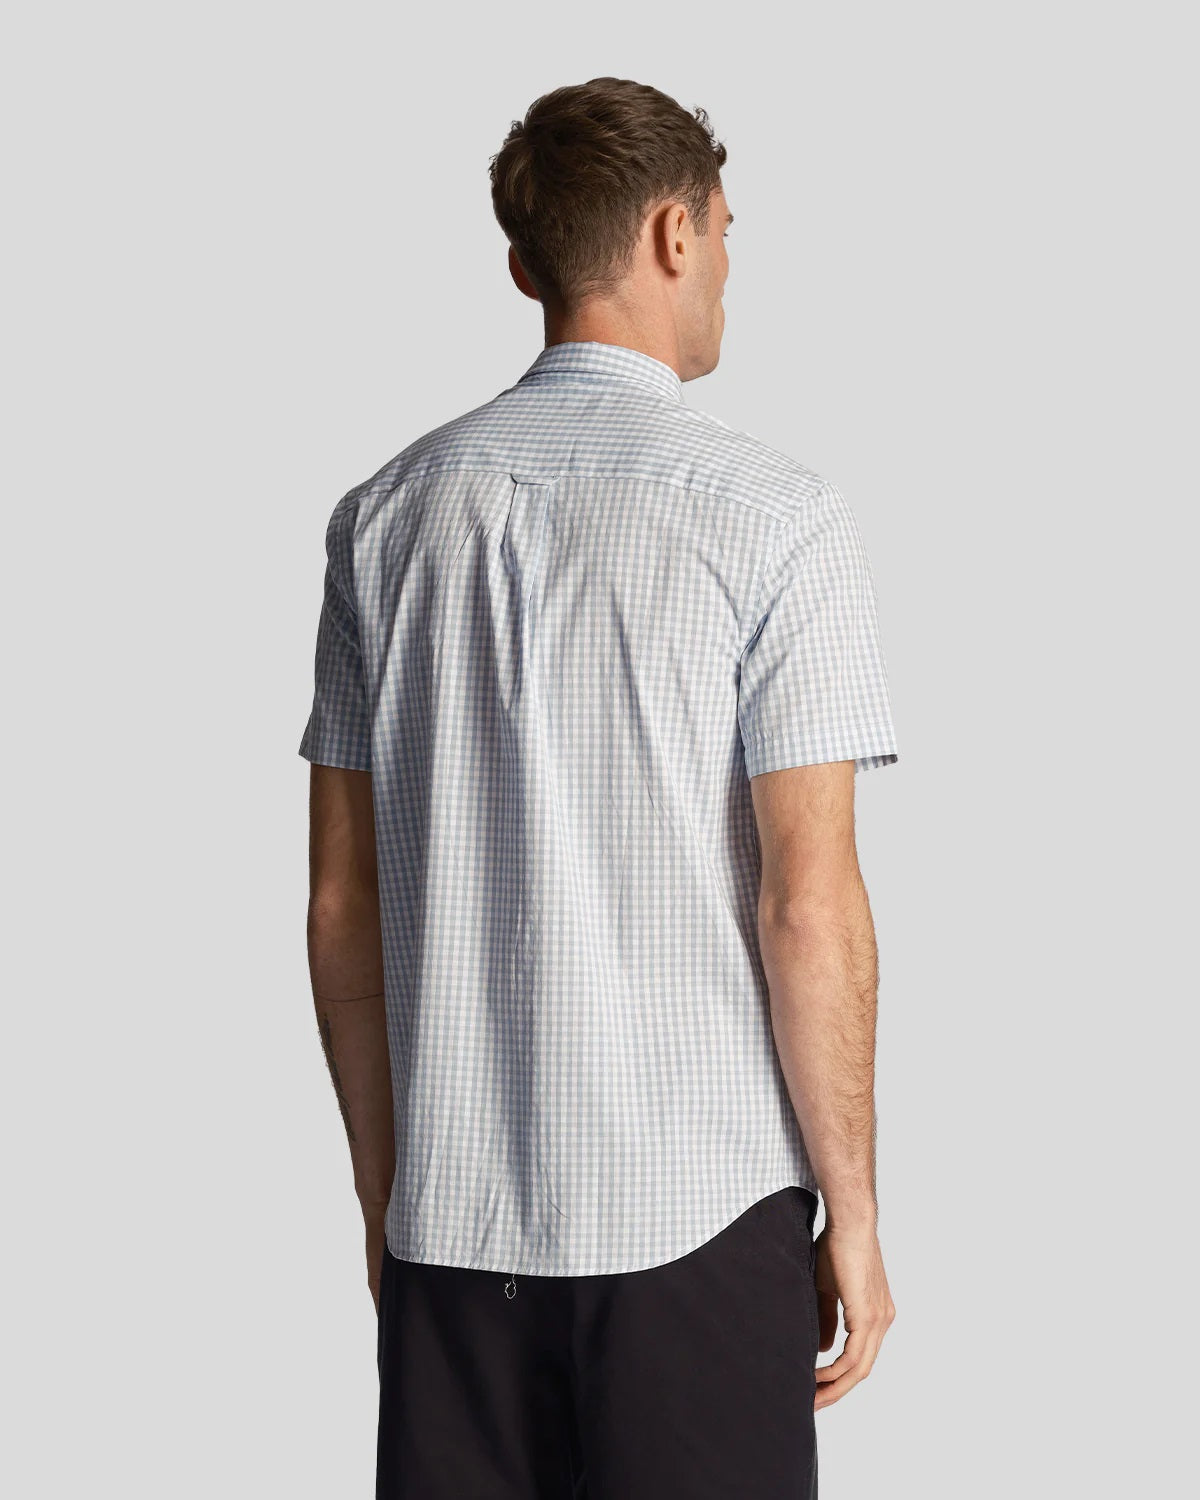 Lyle & Scott Mens Slim Fit Gingham Shirt Short Sleeve, 03, Sw2005V, Light Blue/ White